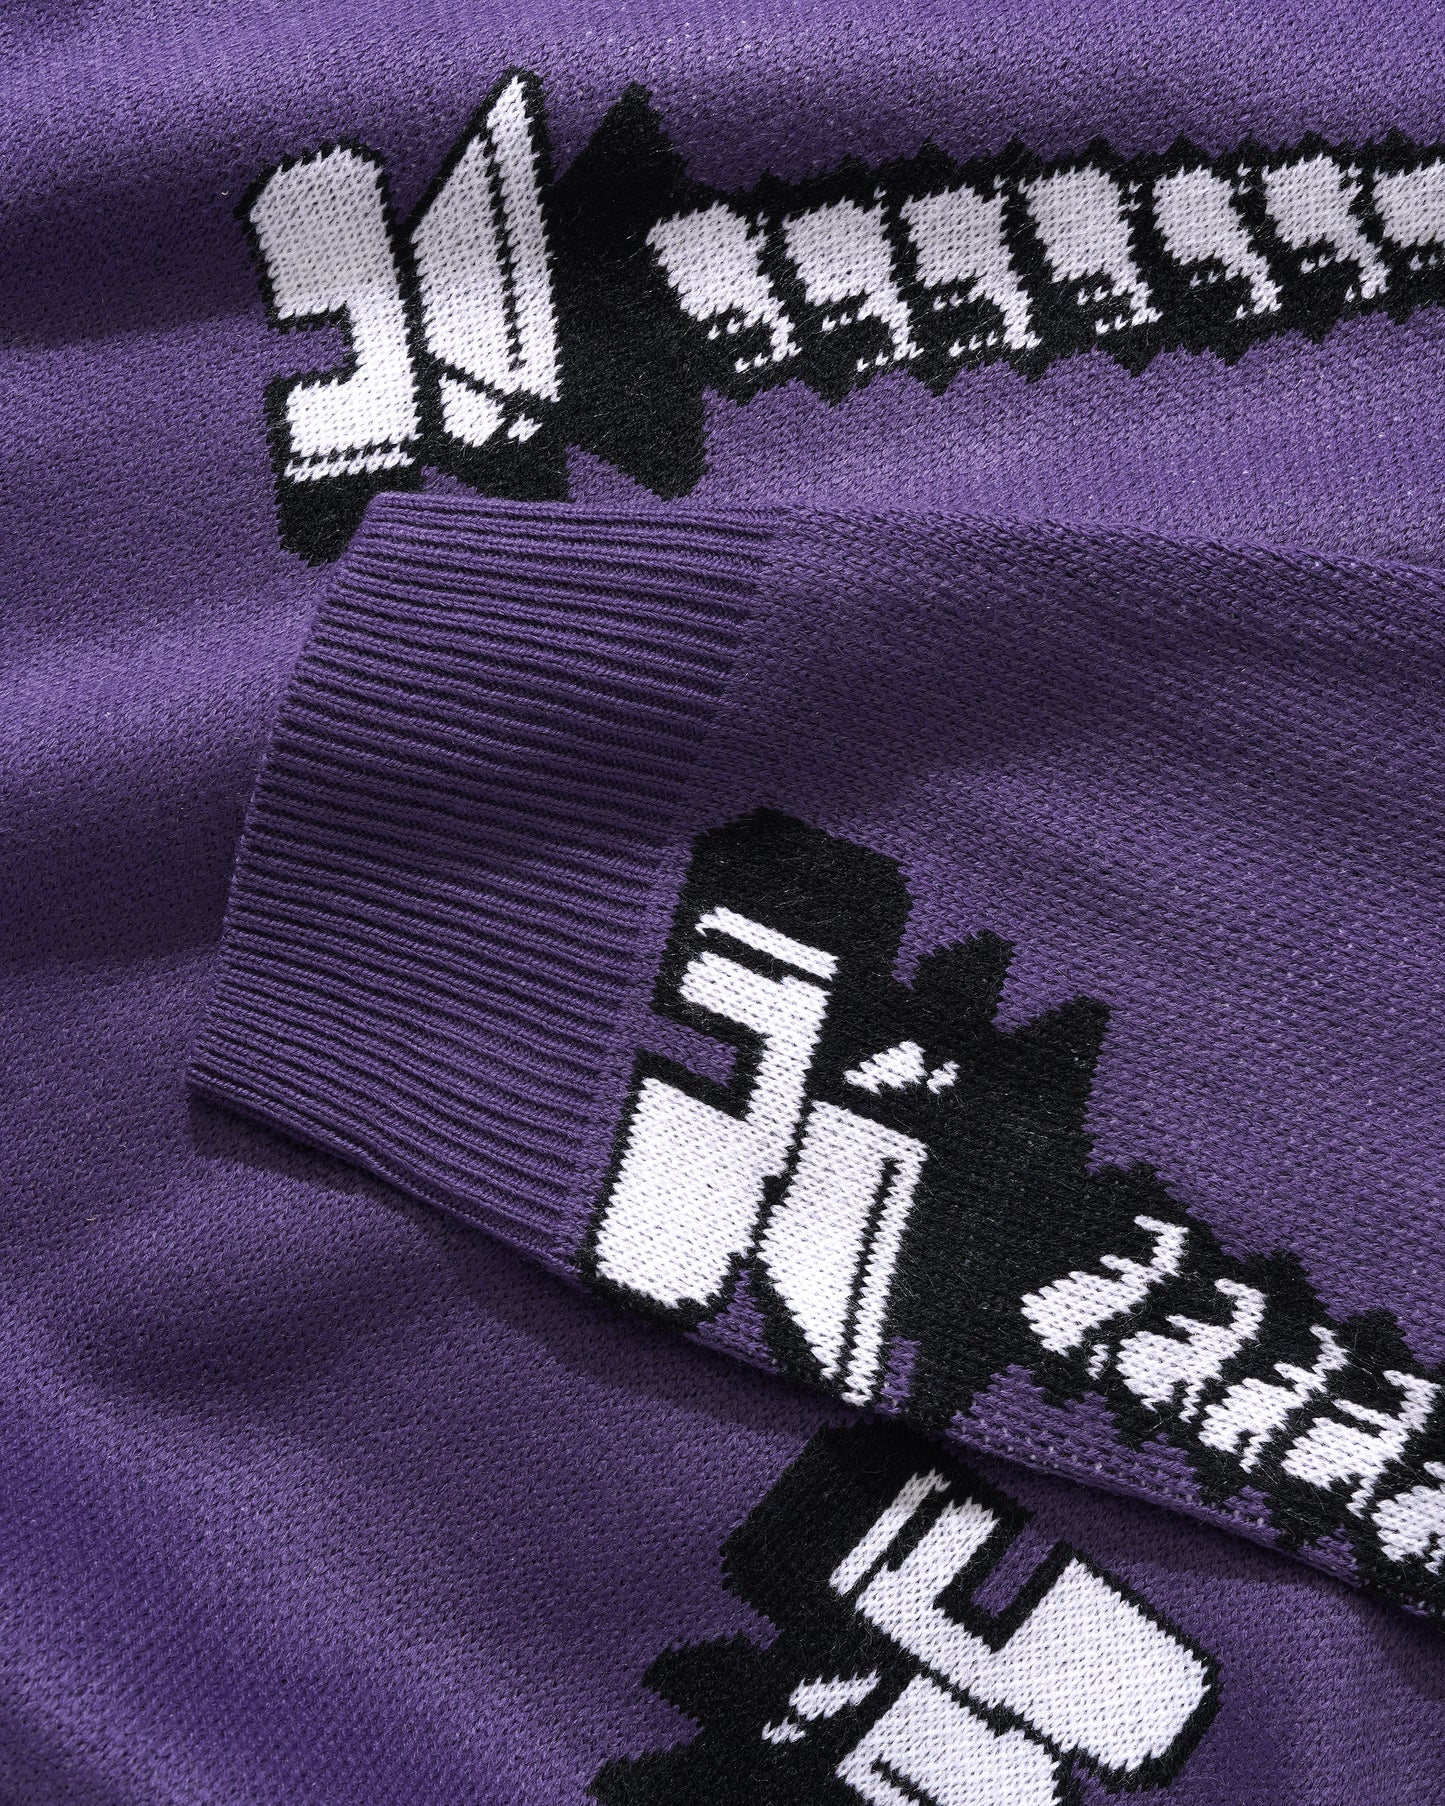 Screw Knit Sweater - Dusk Purple